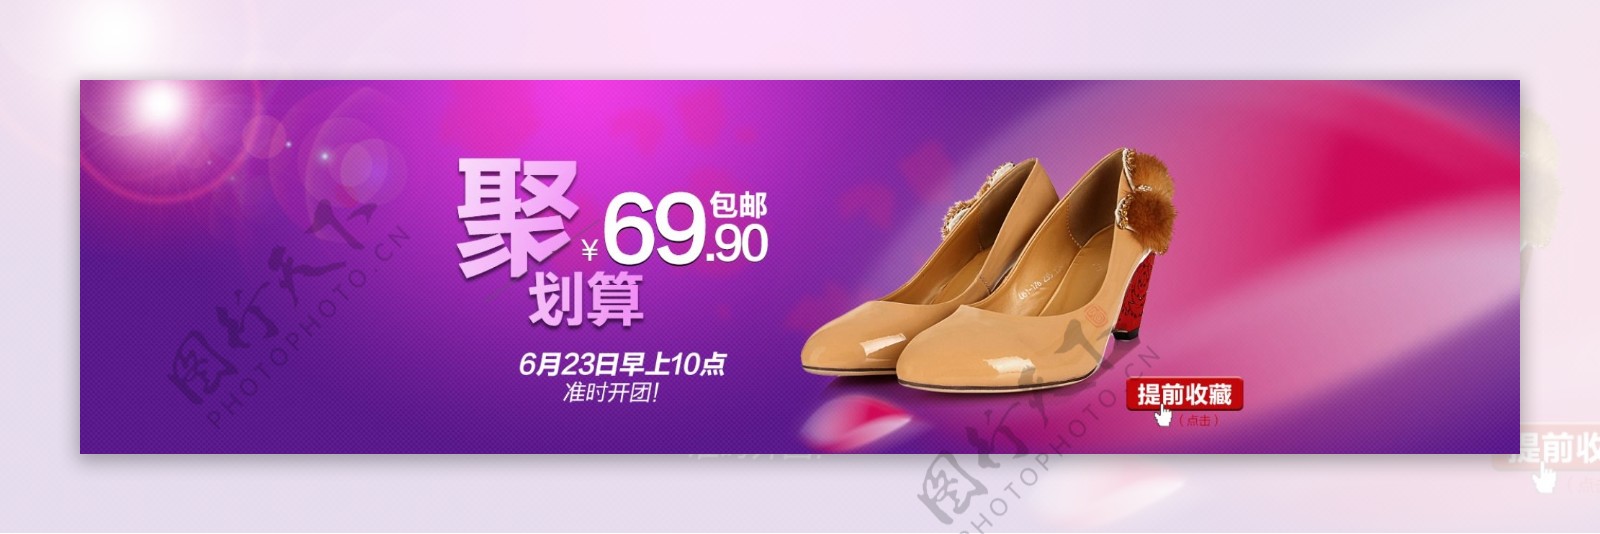 淘宝女鞋广告设计